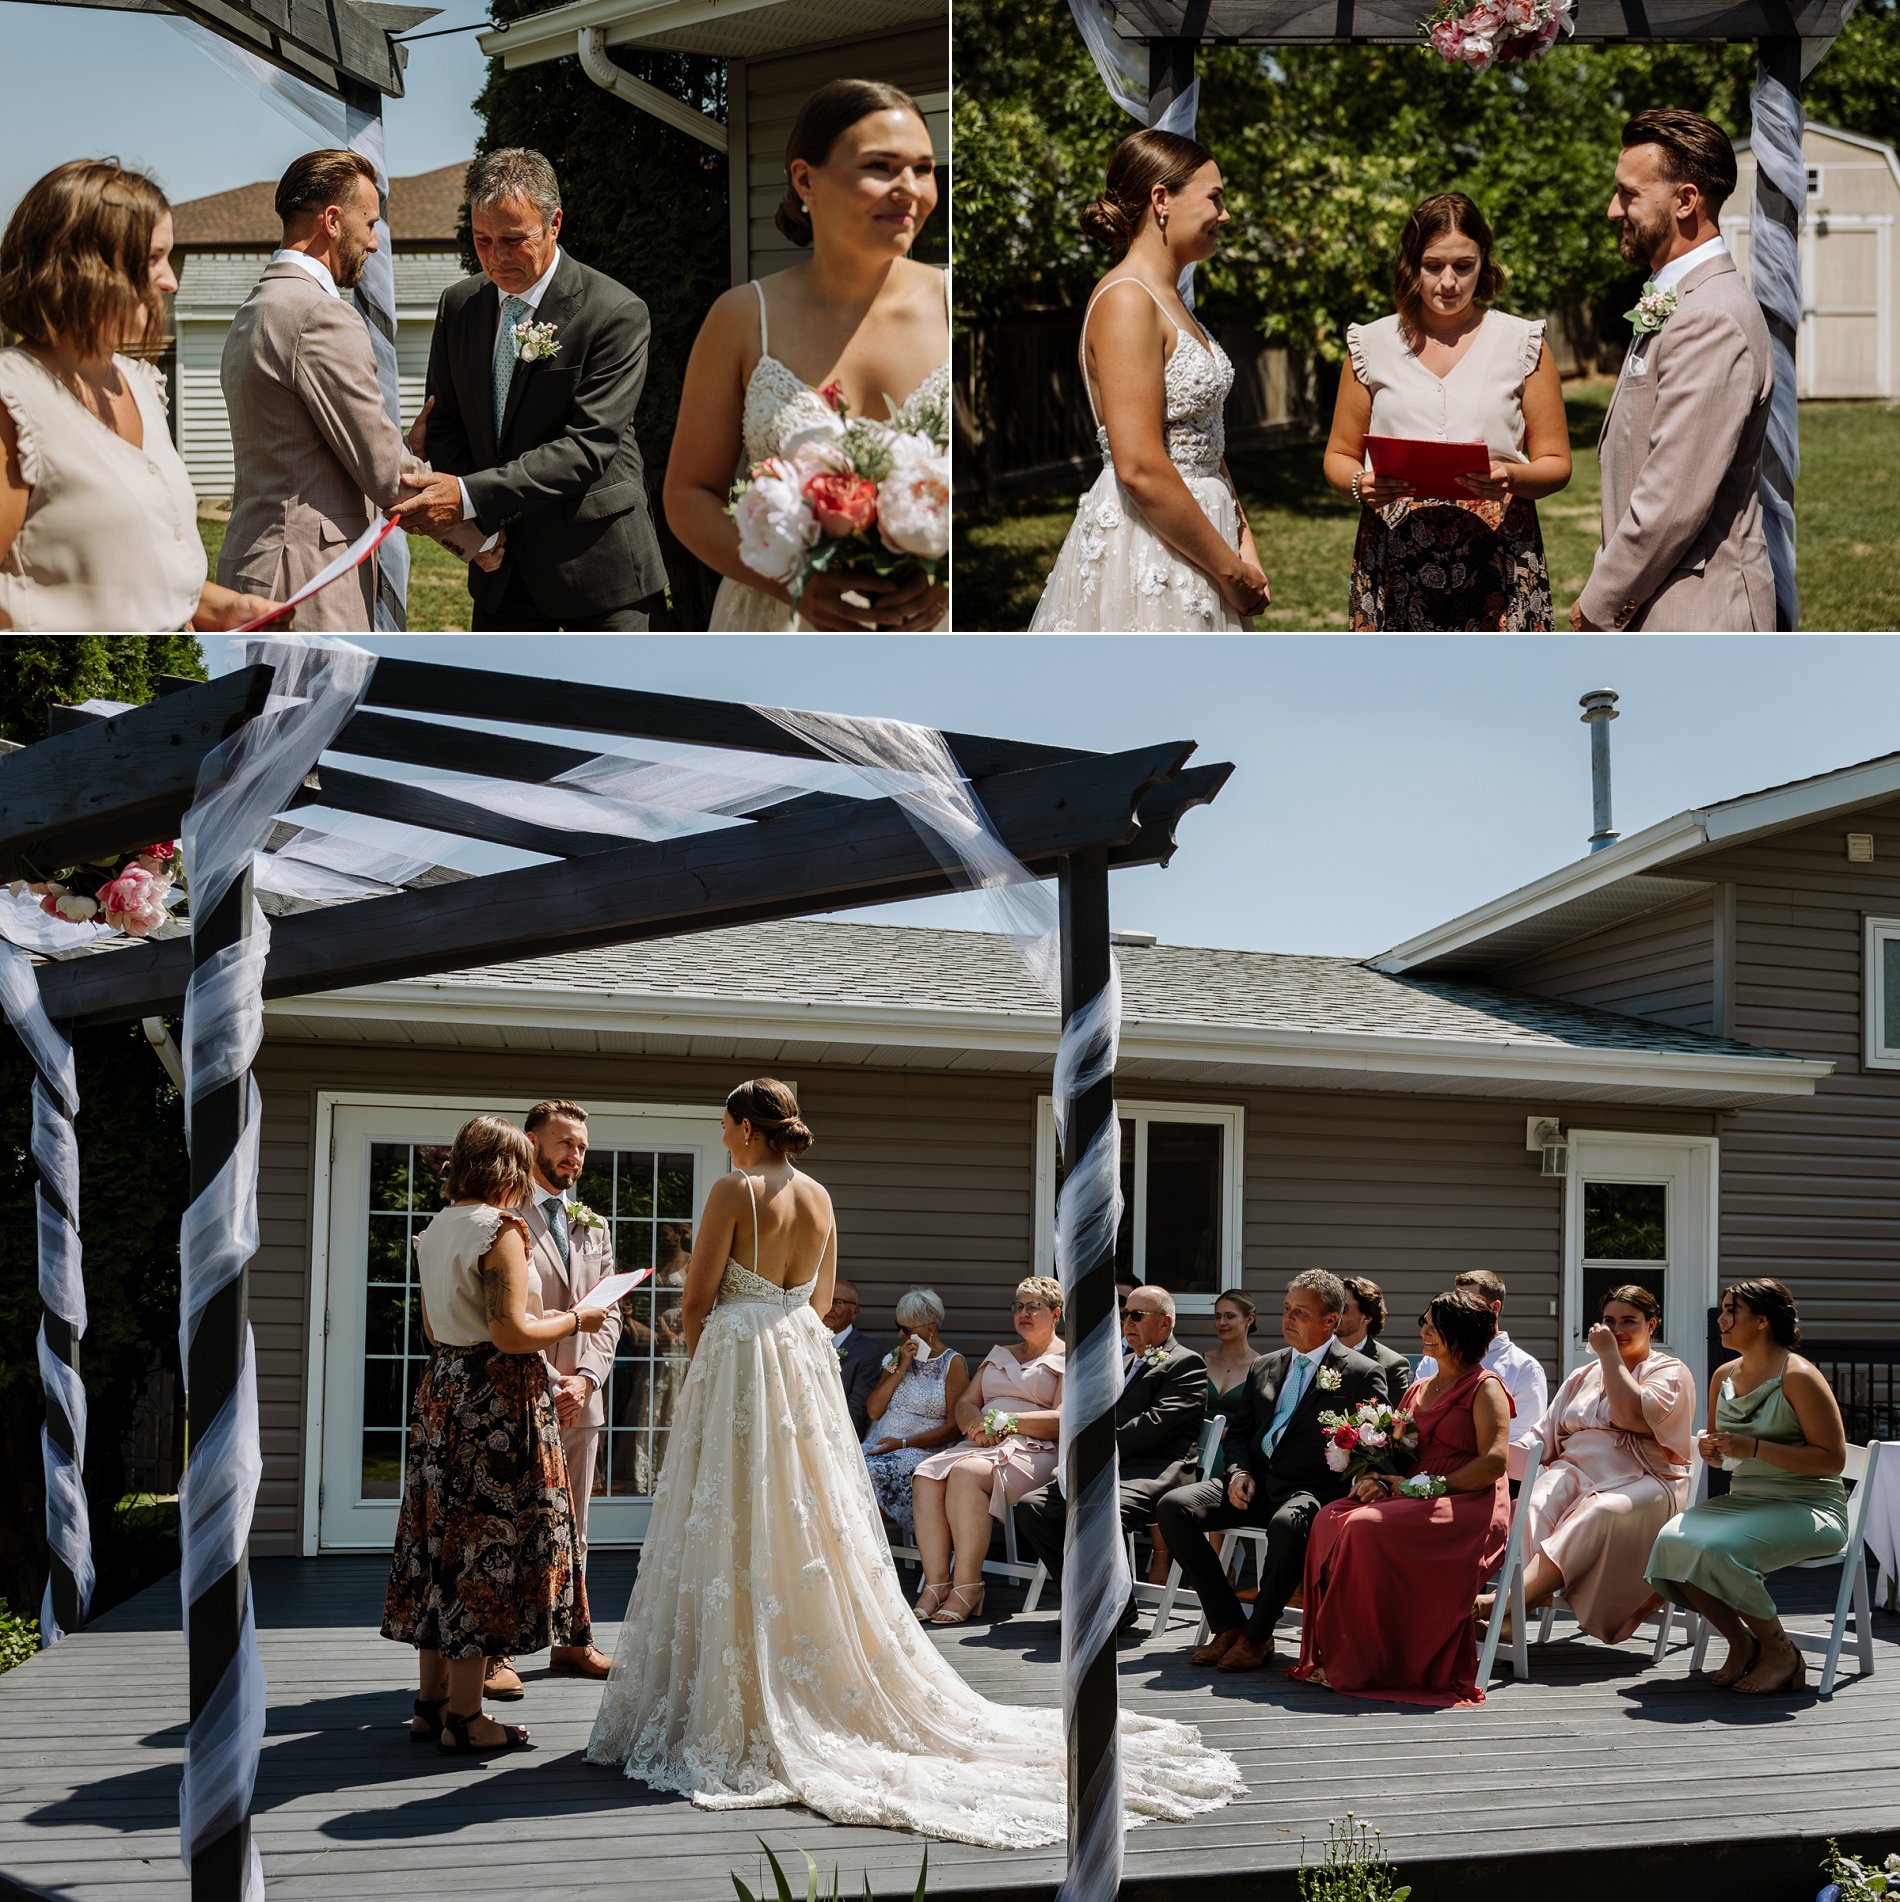 An intimate backyard wedding on a sunny summer day in Saskatoon.